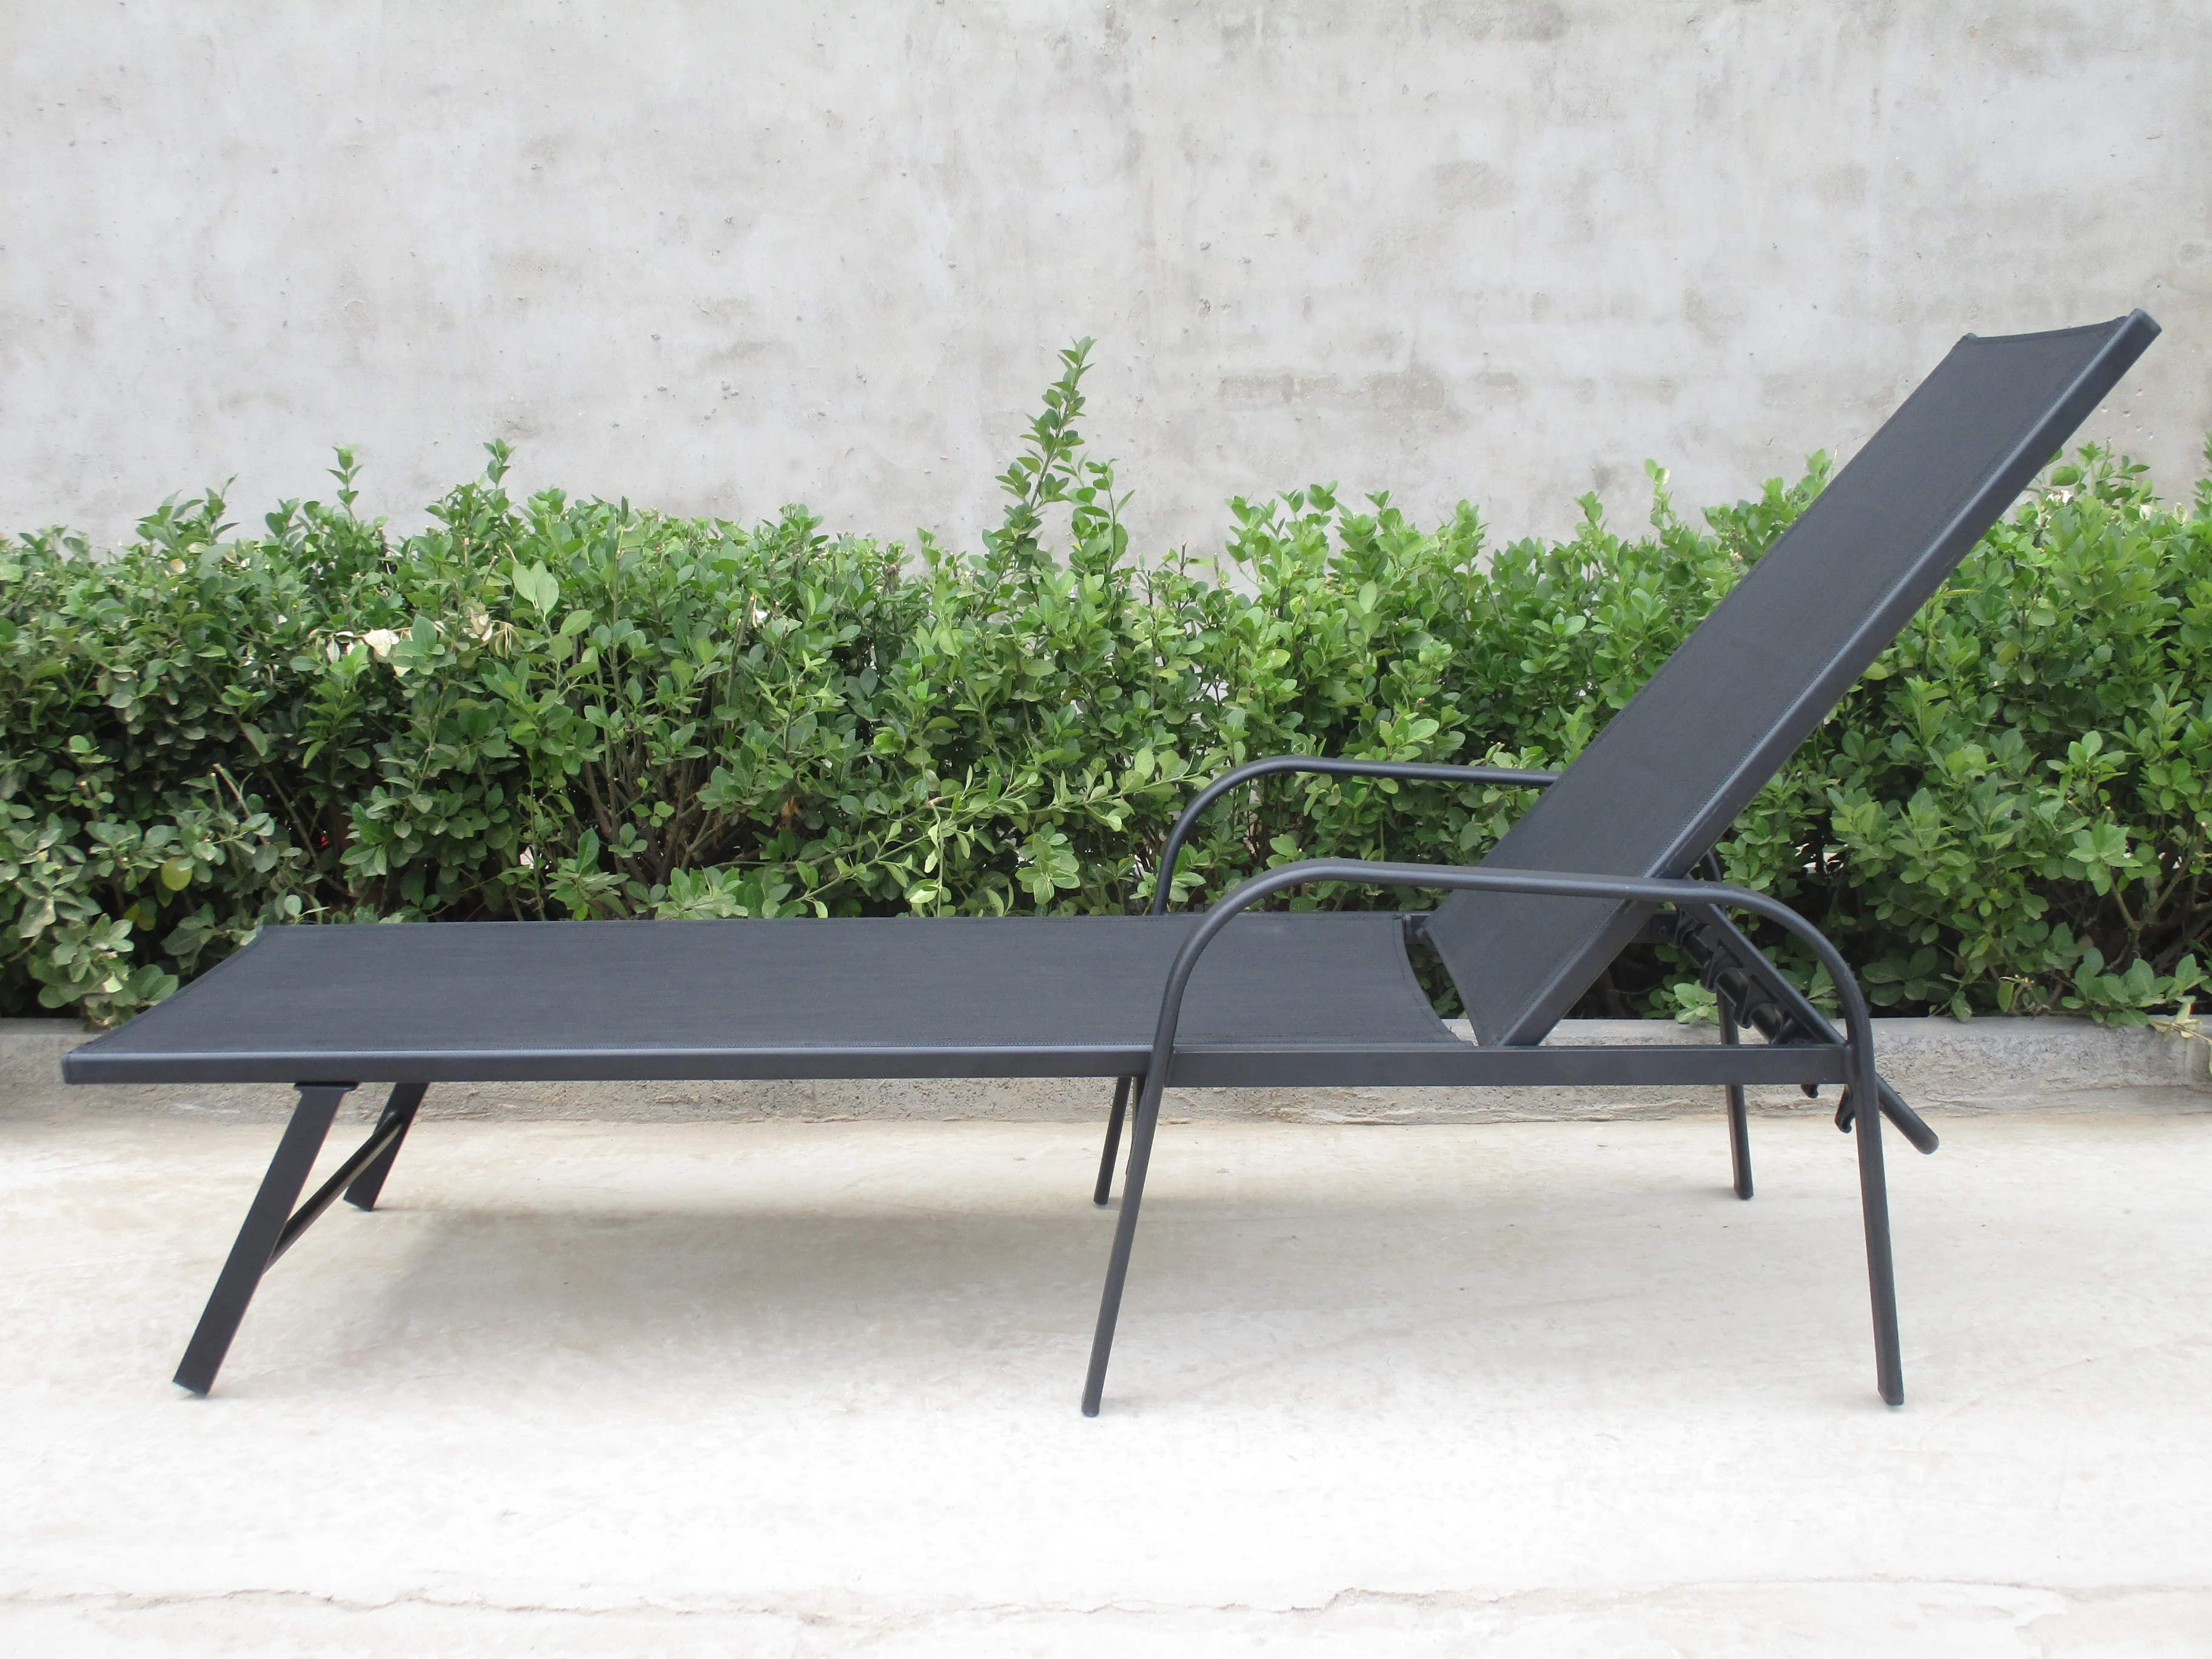 cheap hot sales adjustable  garden sun lounger outdoor furniture textoline beach sunbed chair